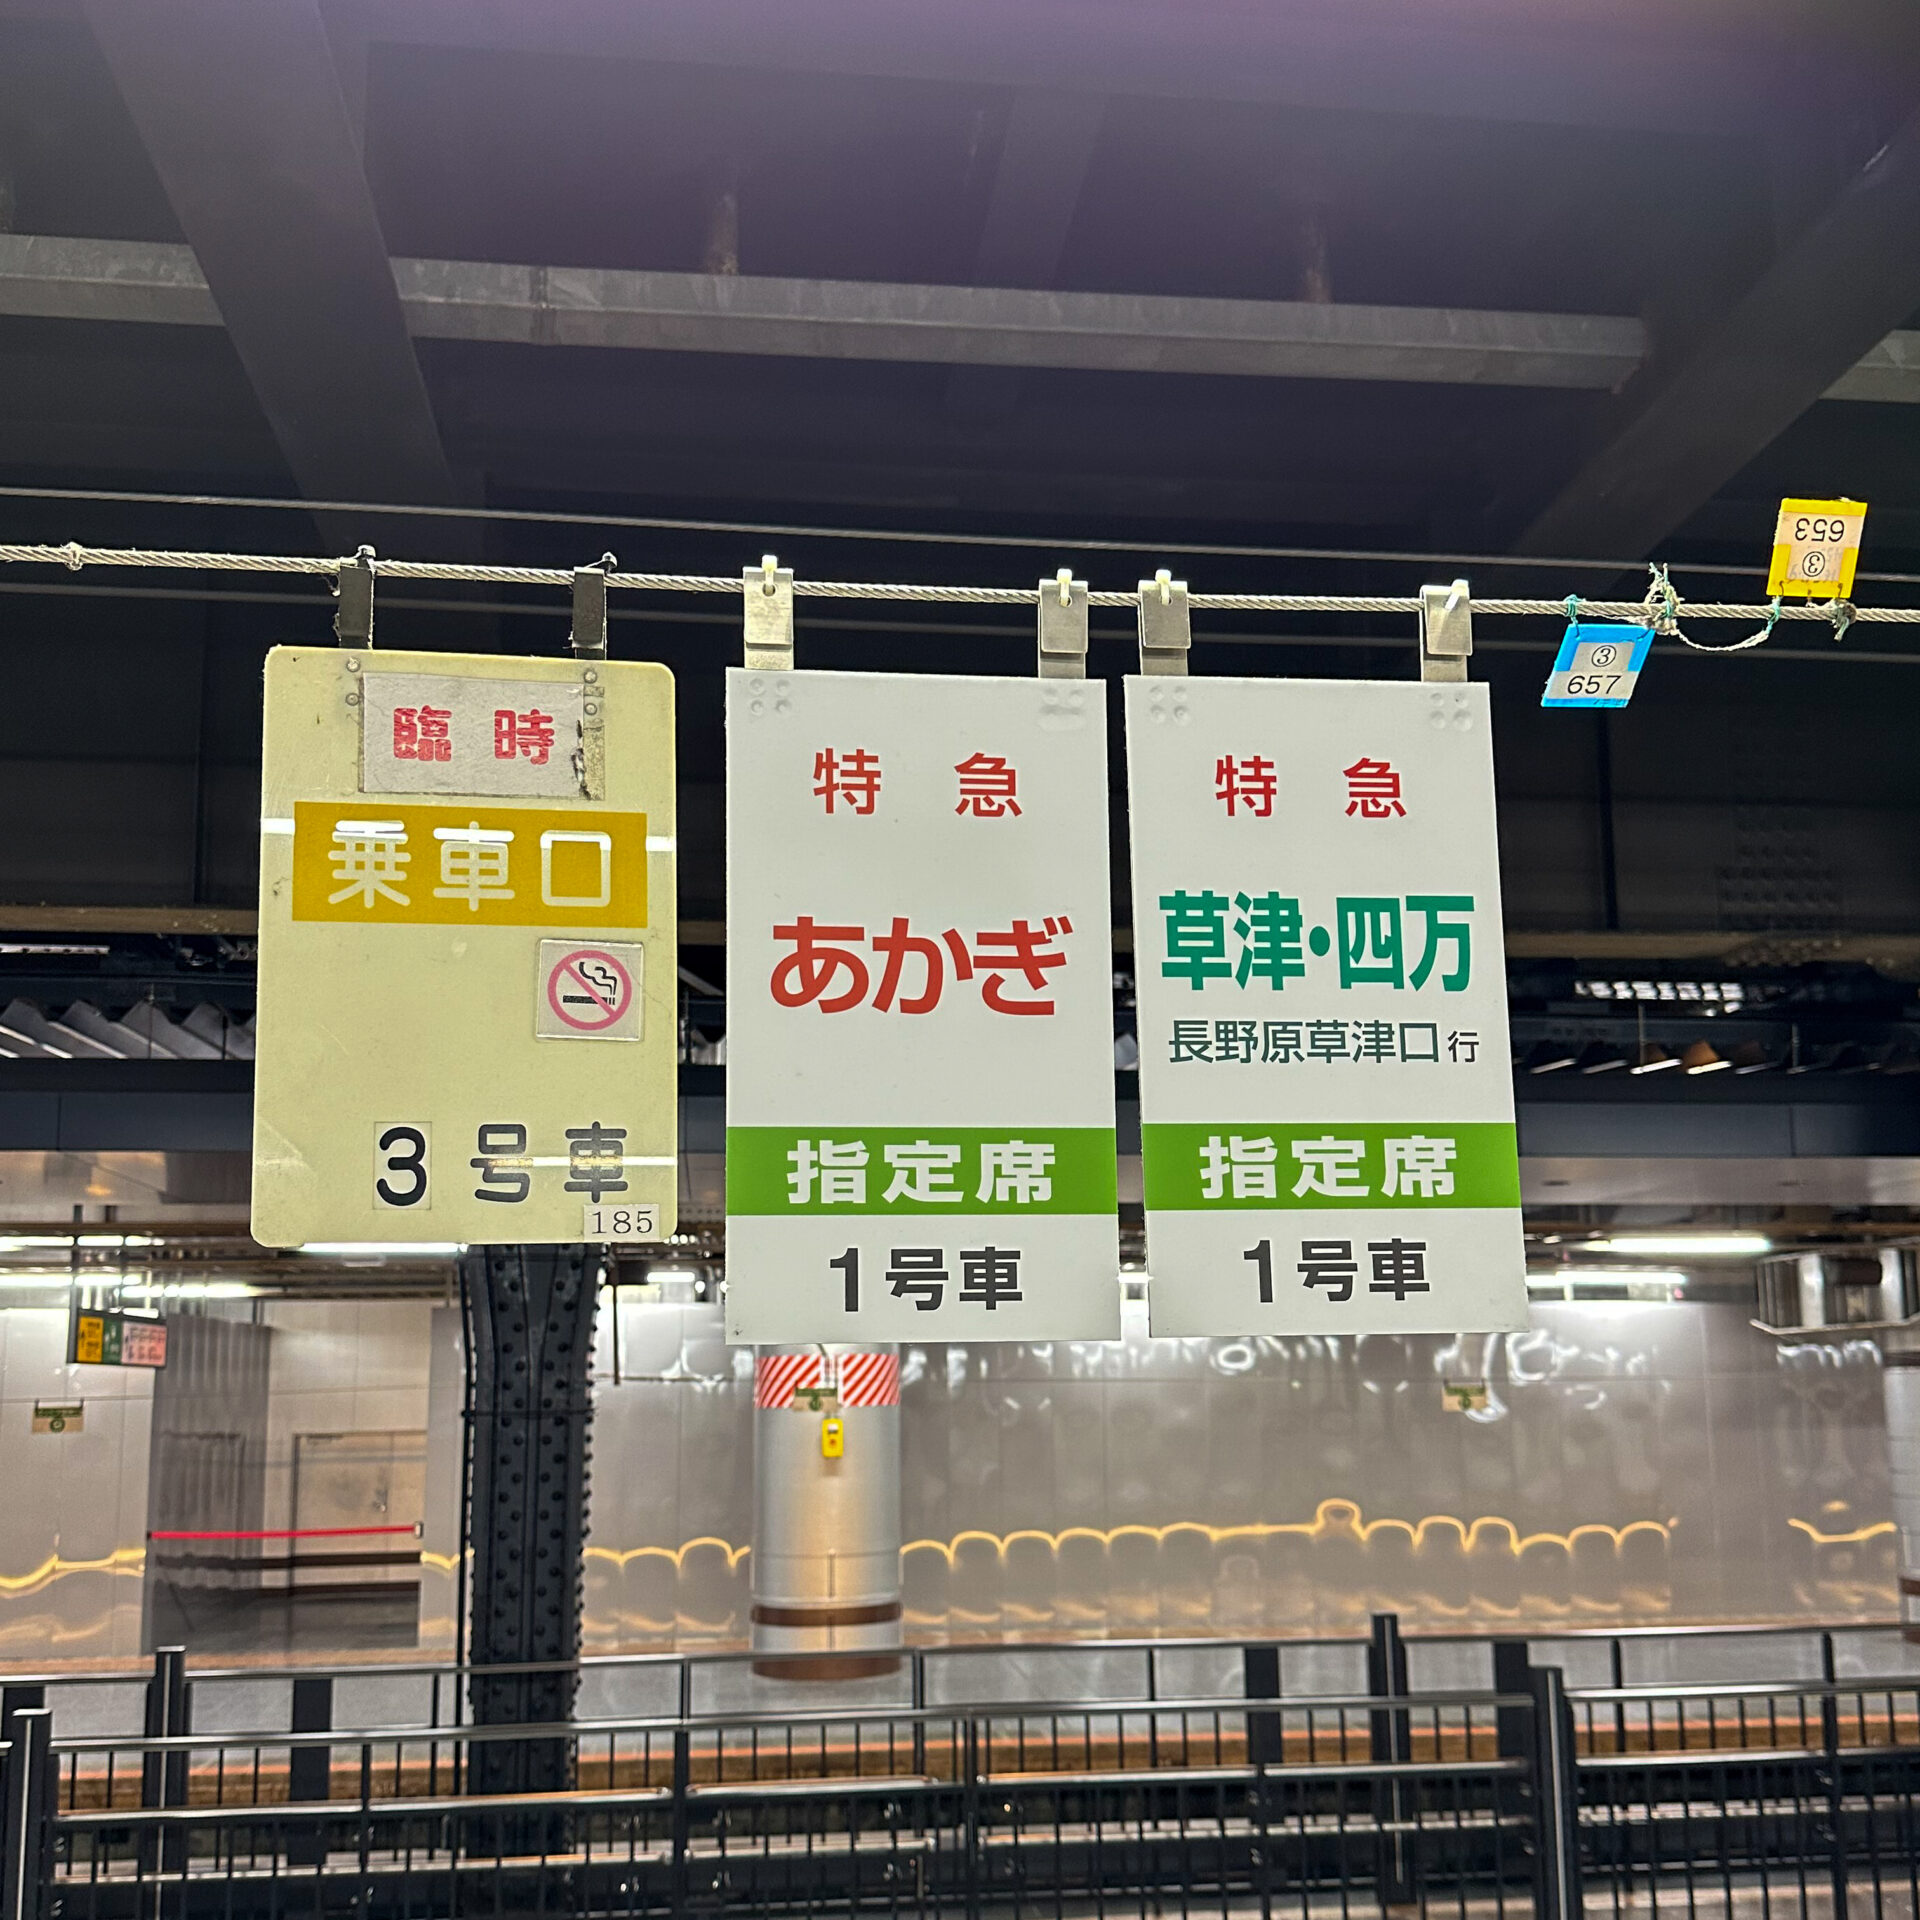 上野駅乗車位置標